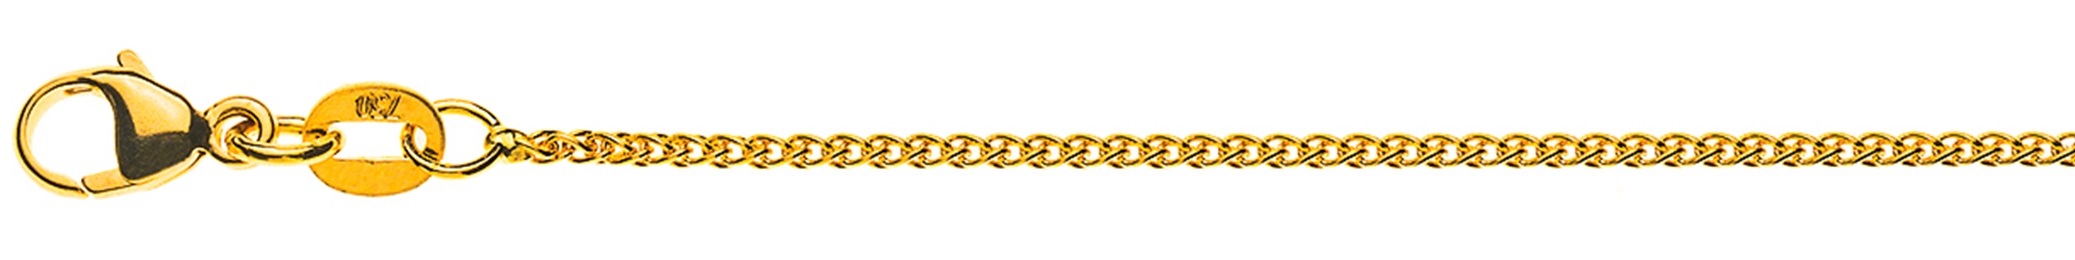 AURONOS Élégance Necklace yellow gold 14K cable chain 45cm 1.2mm